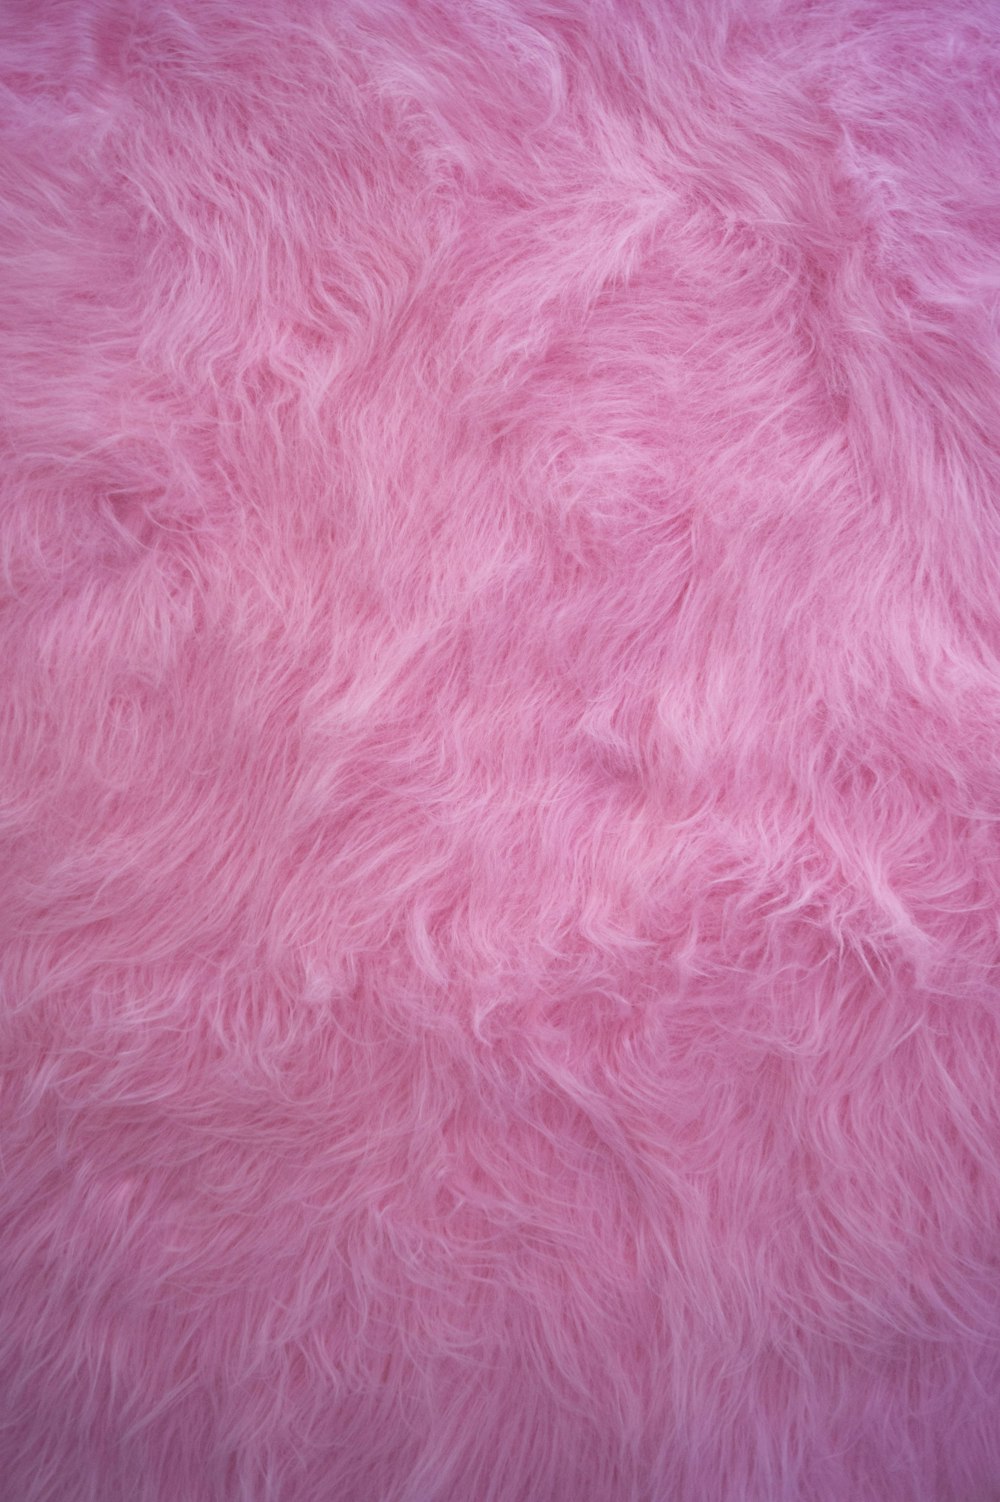 têxtil cor-de-rosa na fotografia de perto